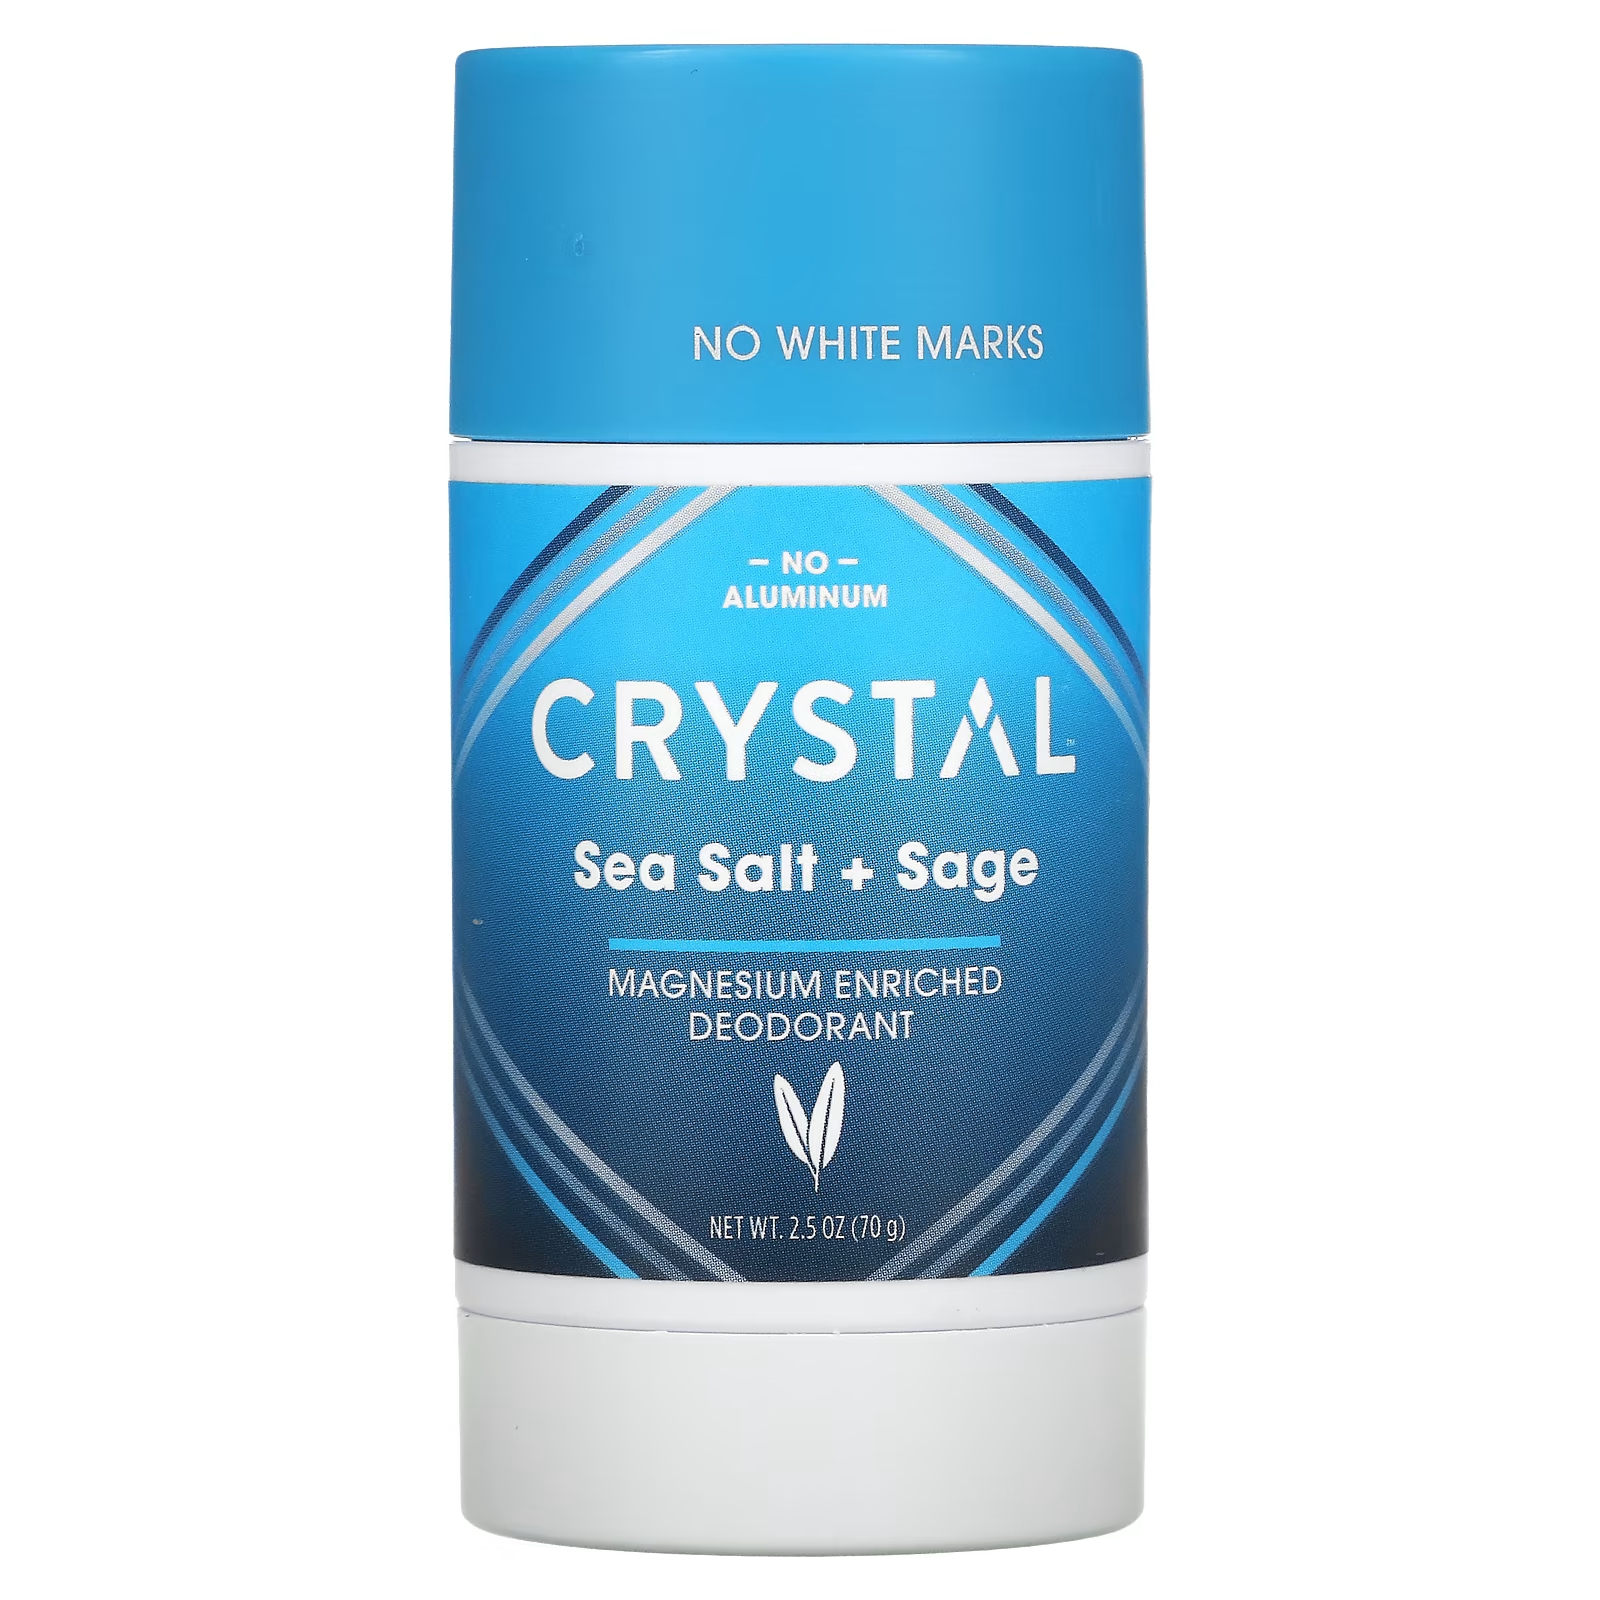 Дезодорант Crystal обогащенный магнием, морская соль + шалфей crystal обогащенный магнием дезодорант clean fresh 70 г 2 5 унции